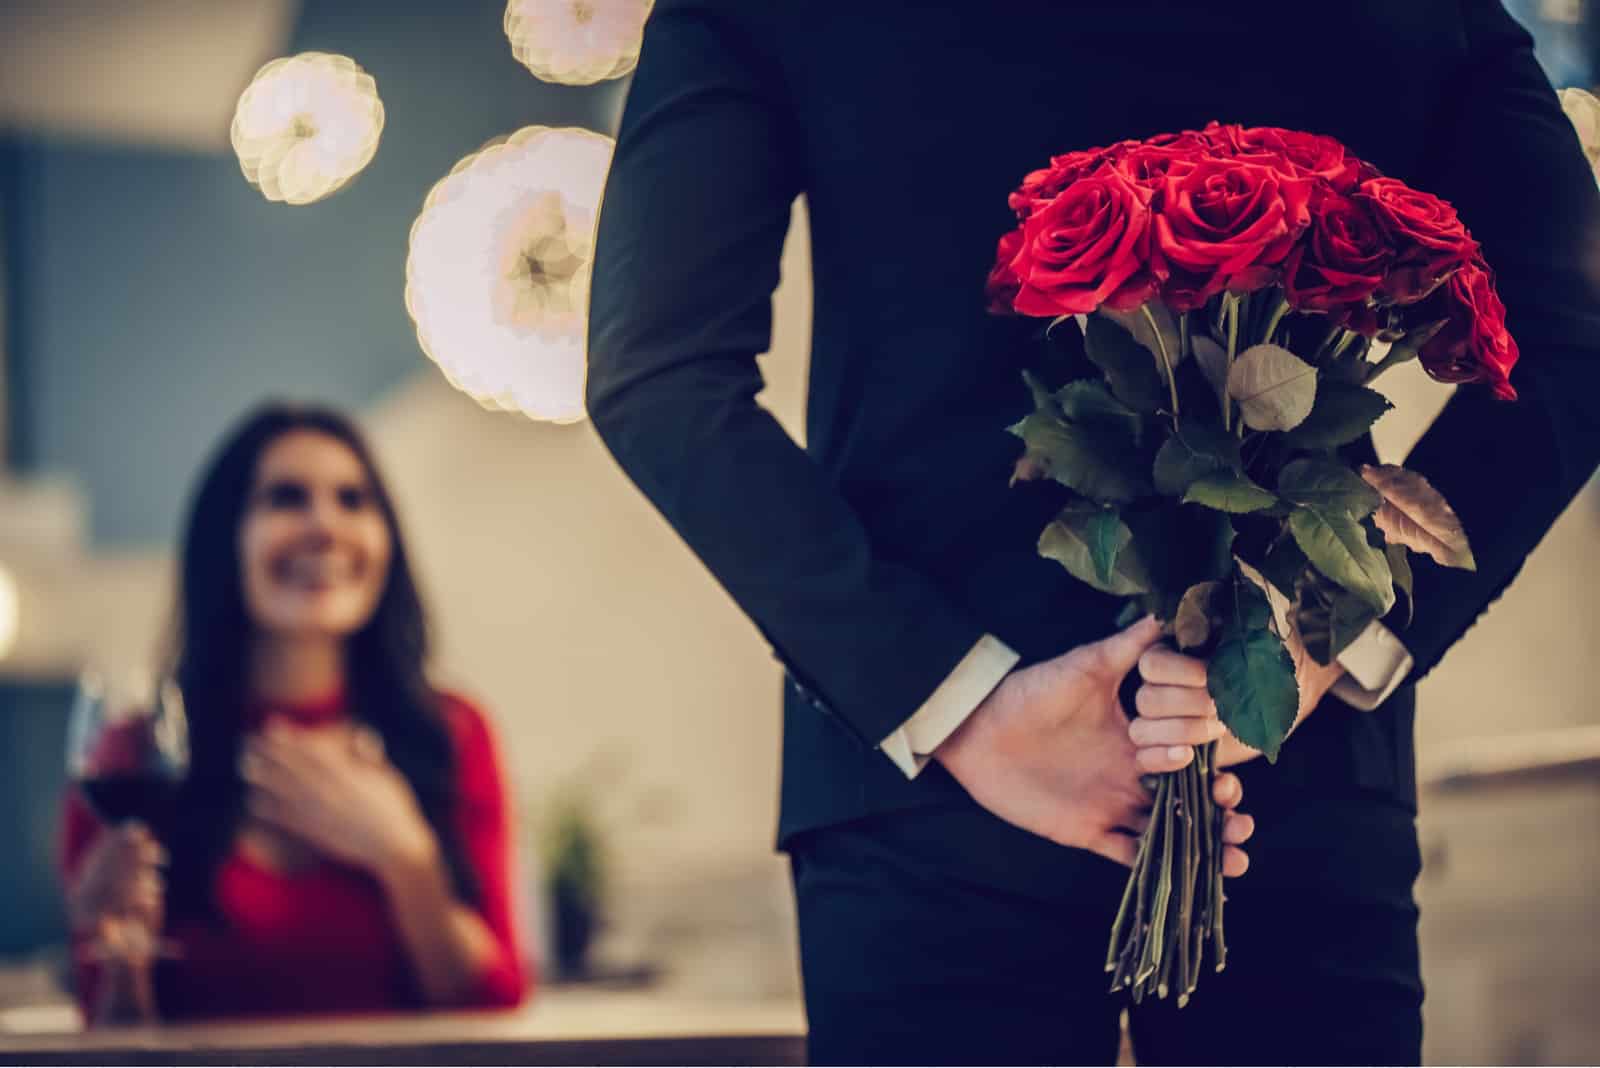 un homme a surpris une femme avec un bouquet de roses rouges